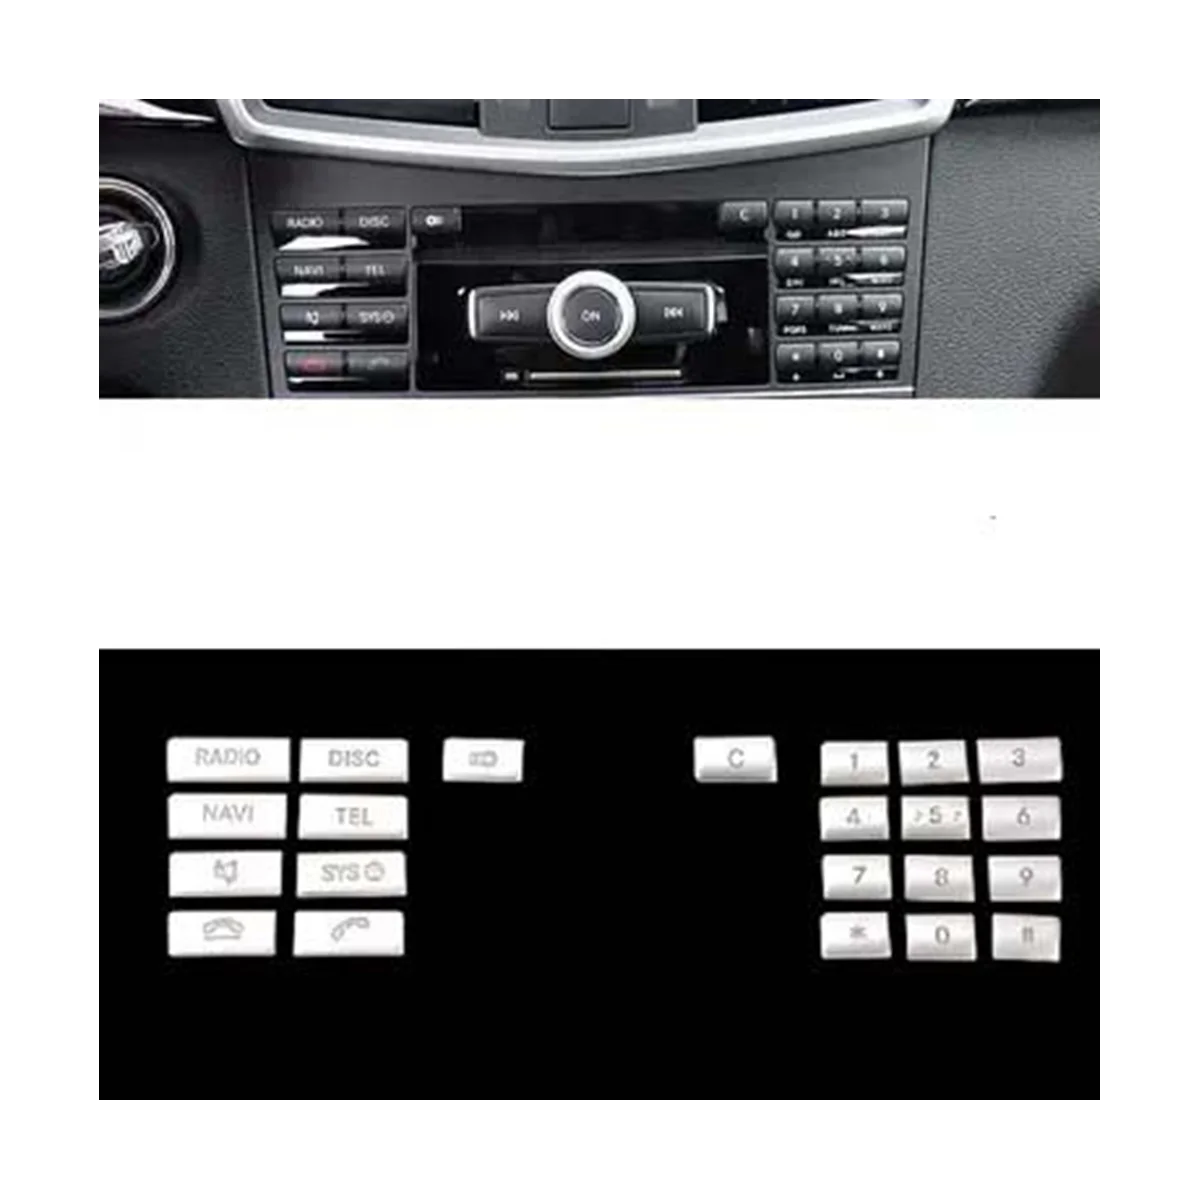 Car Center Console CD Мультимедийная кнопка Крышка рамки Наклейка для Mercedes Benz E Class W212 2010-2011 (серебристый) - 3